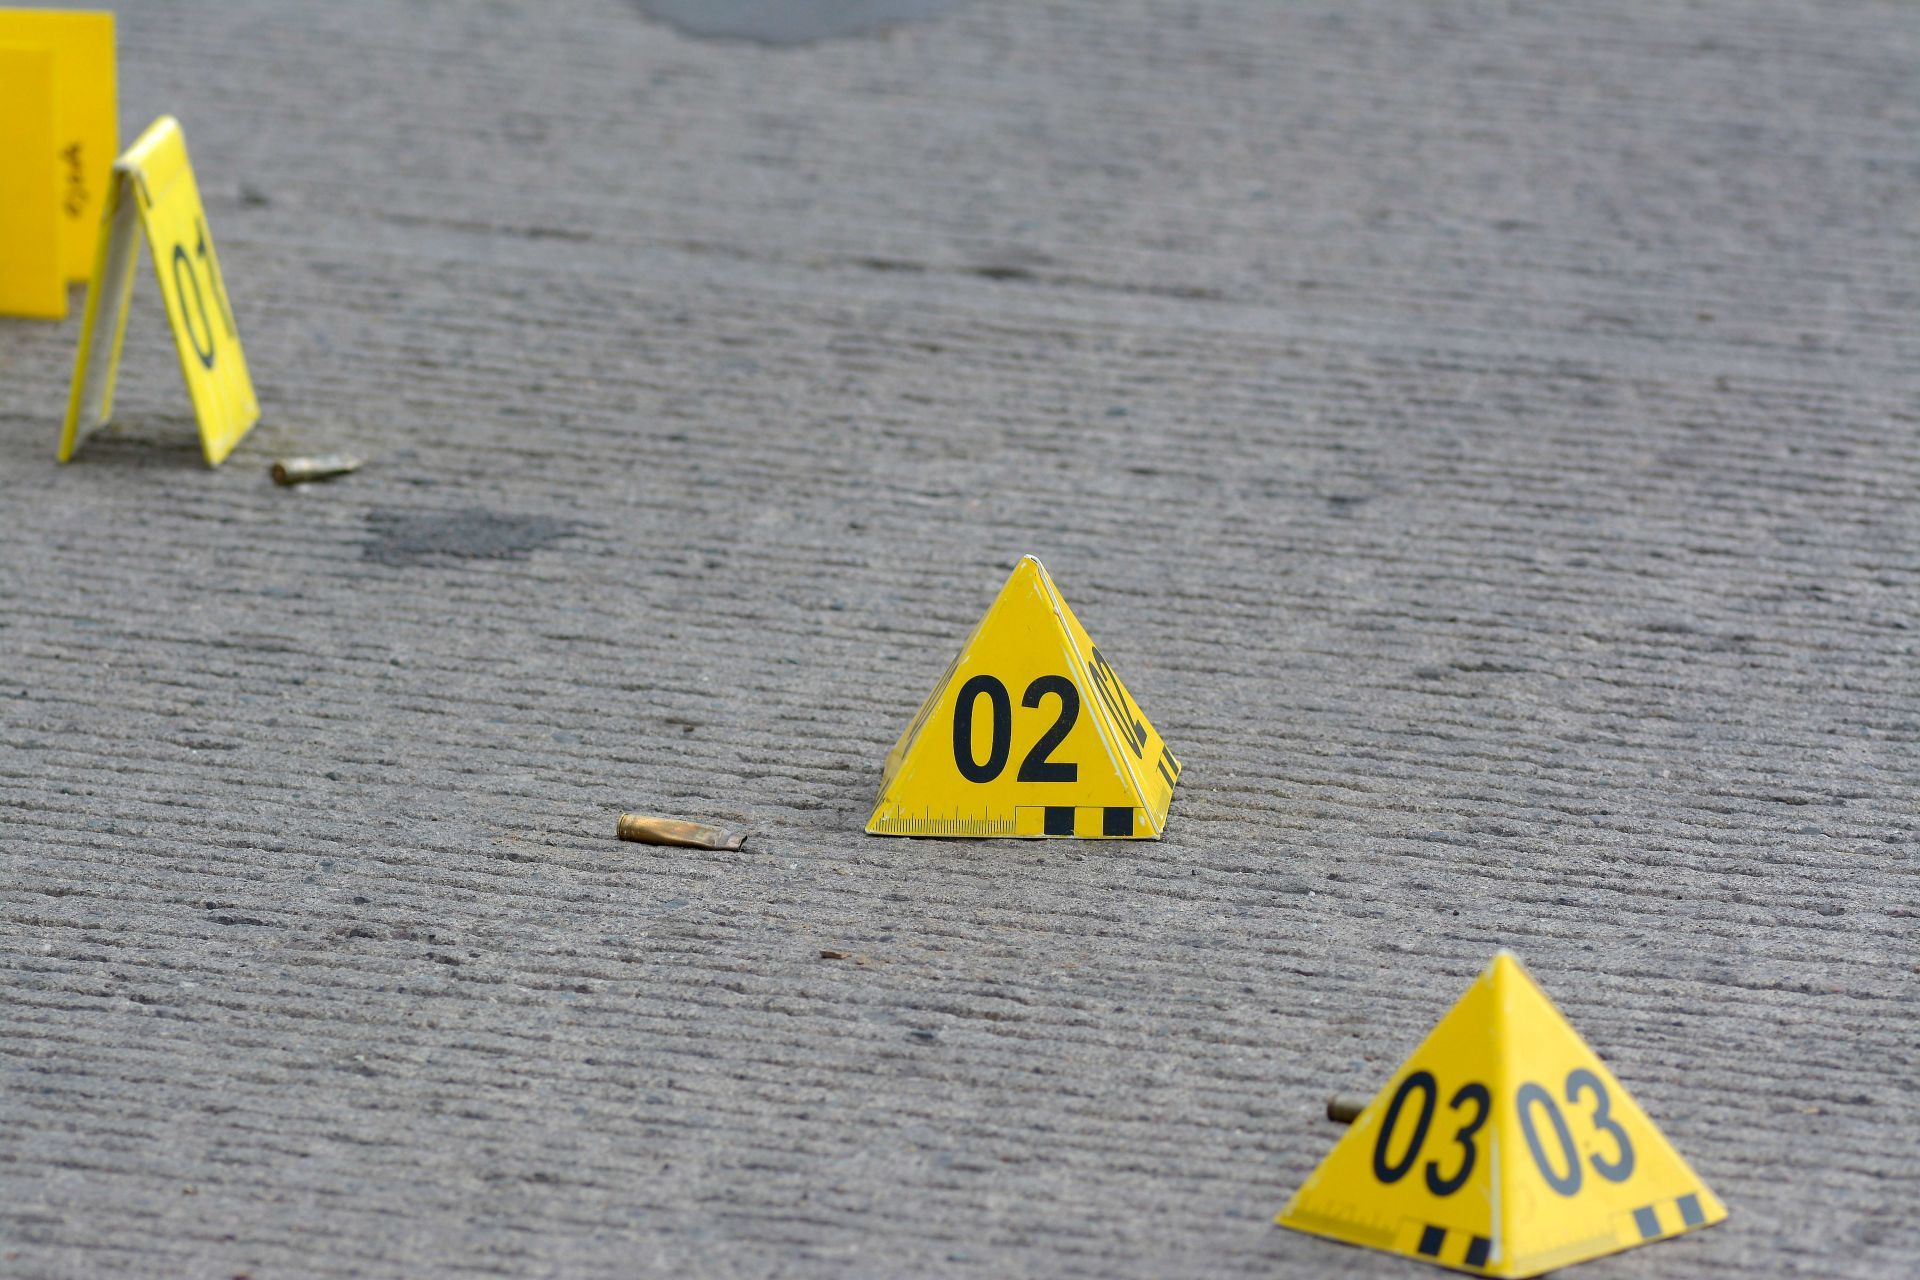 6 personas mueren tras un enfrentamiento armado en Puebla